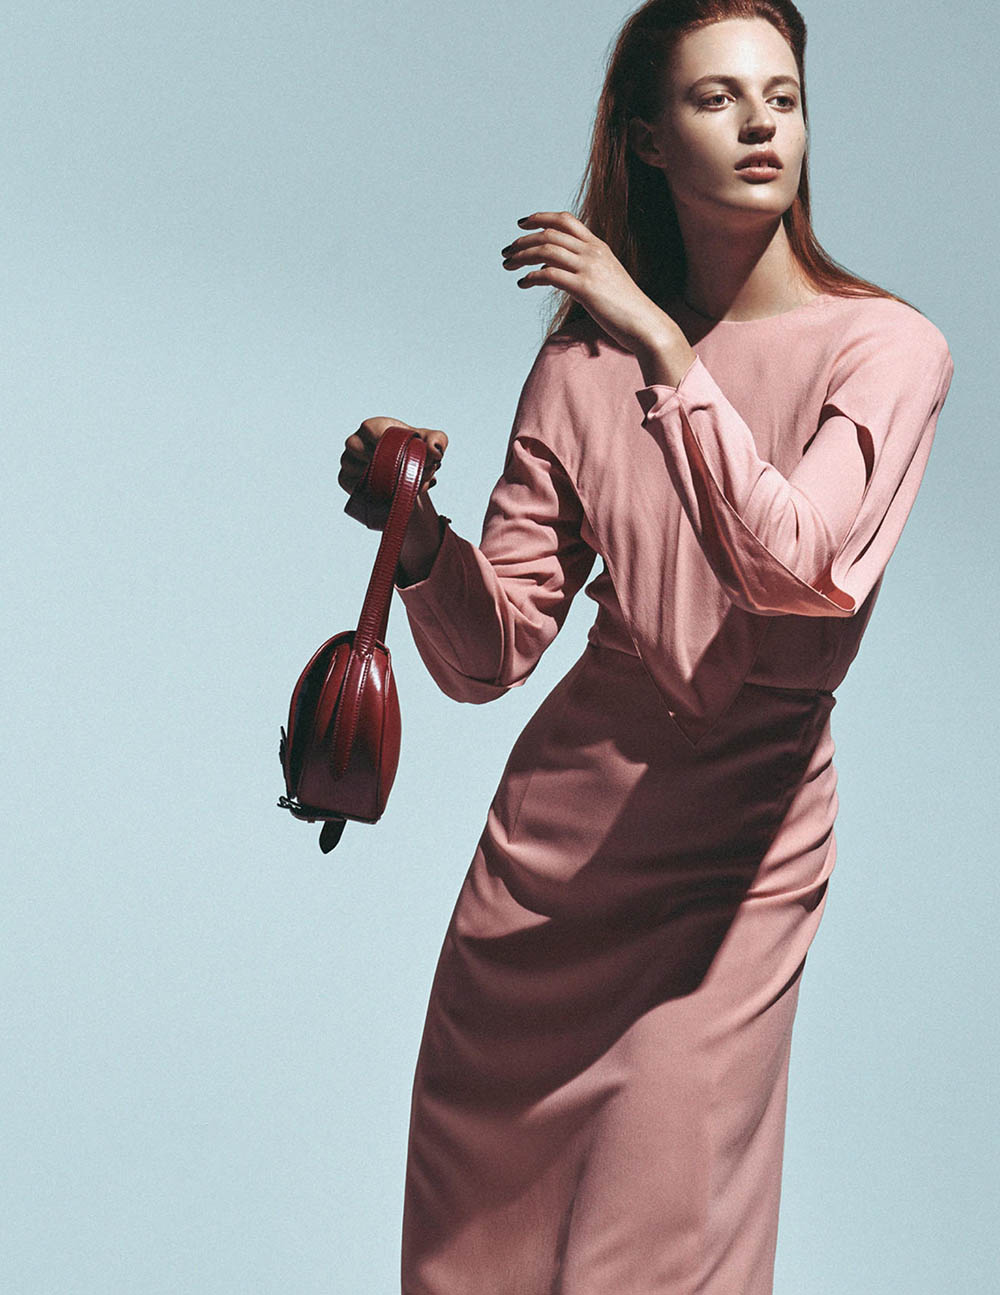 Julia Banas by Ferry van der Nat for Vogue Netherlands October 2019